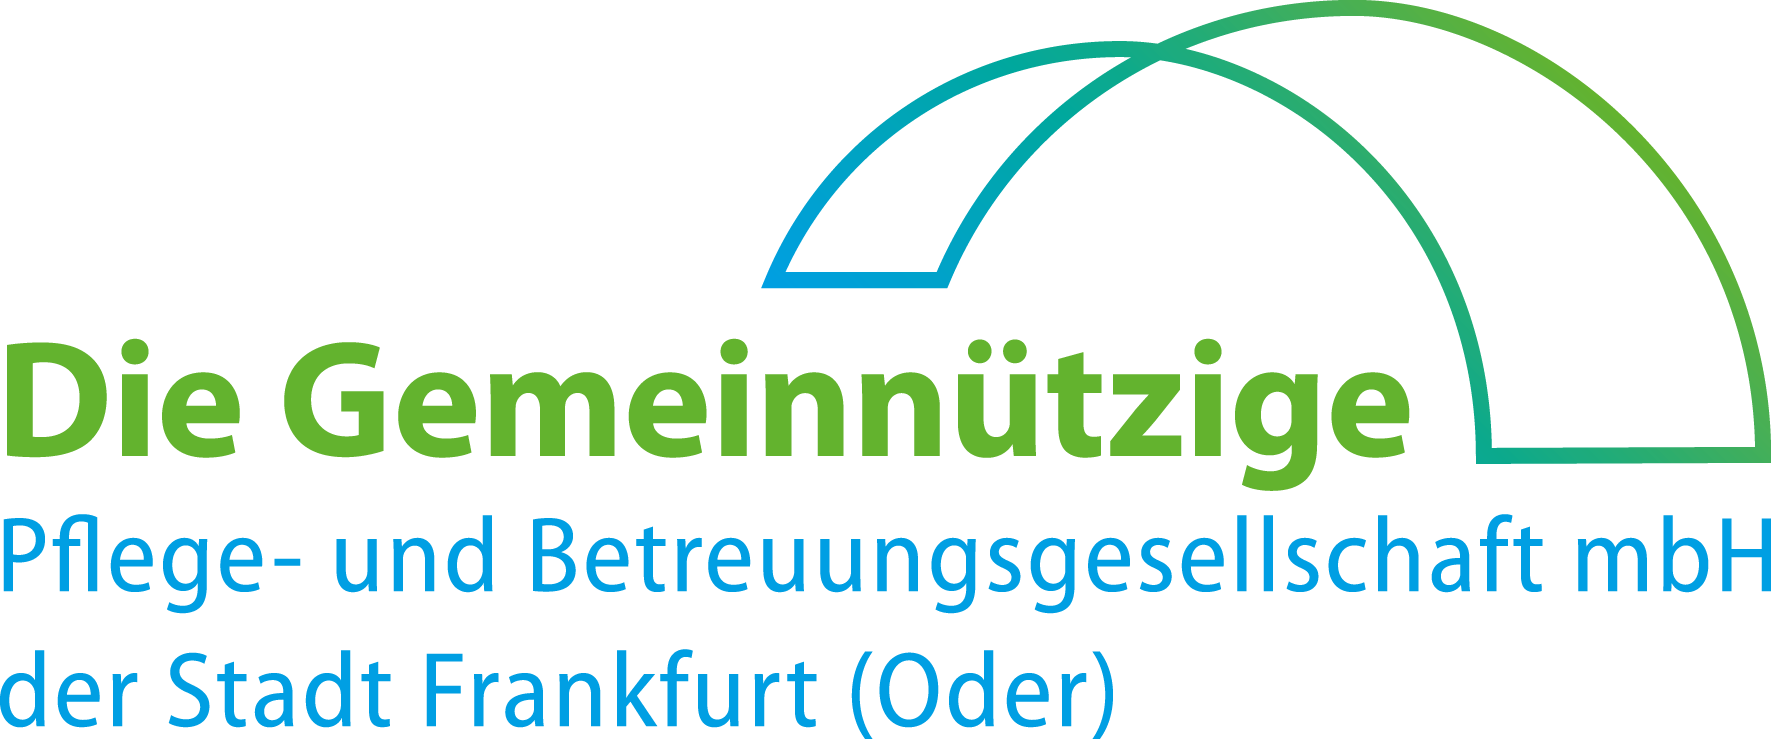 Logo: Die Gemeinnützige - Ambulanter Pflegedienst